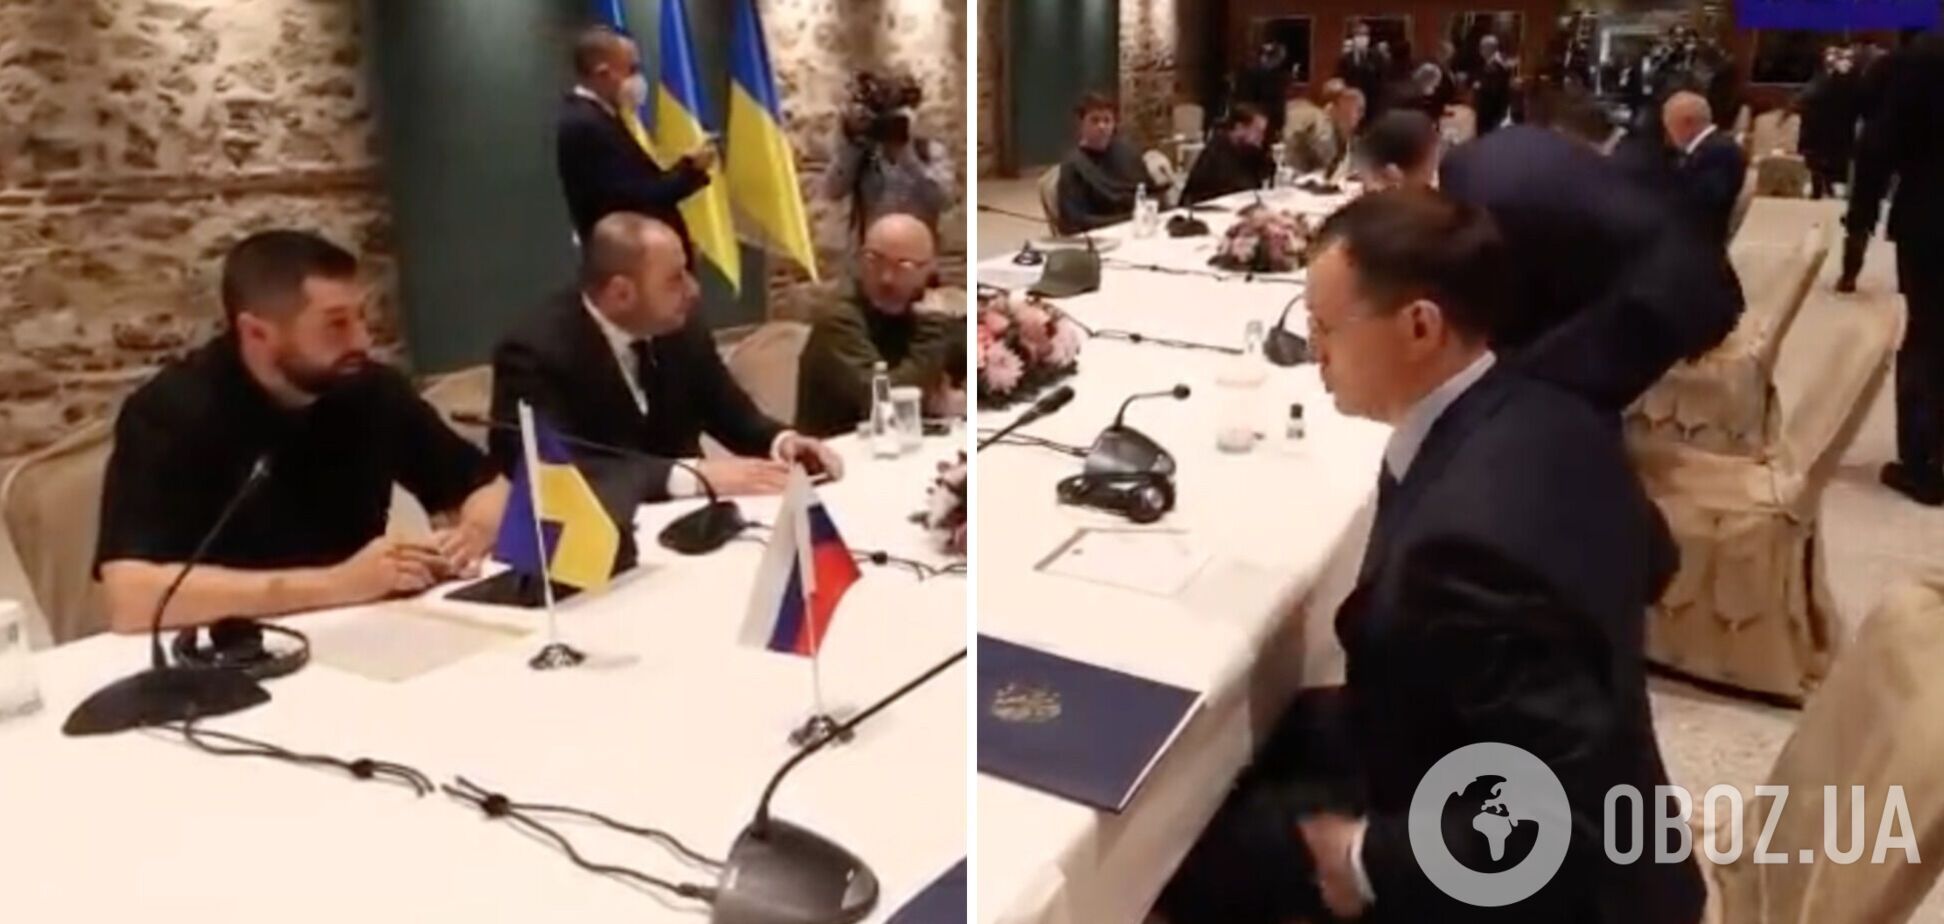 Арахамія на переговорах пояснив помічнику Путіна, що на столі стоїть антисептик: той подумав, горілка. Відео